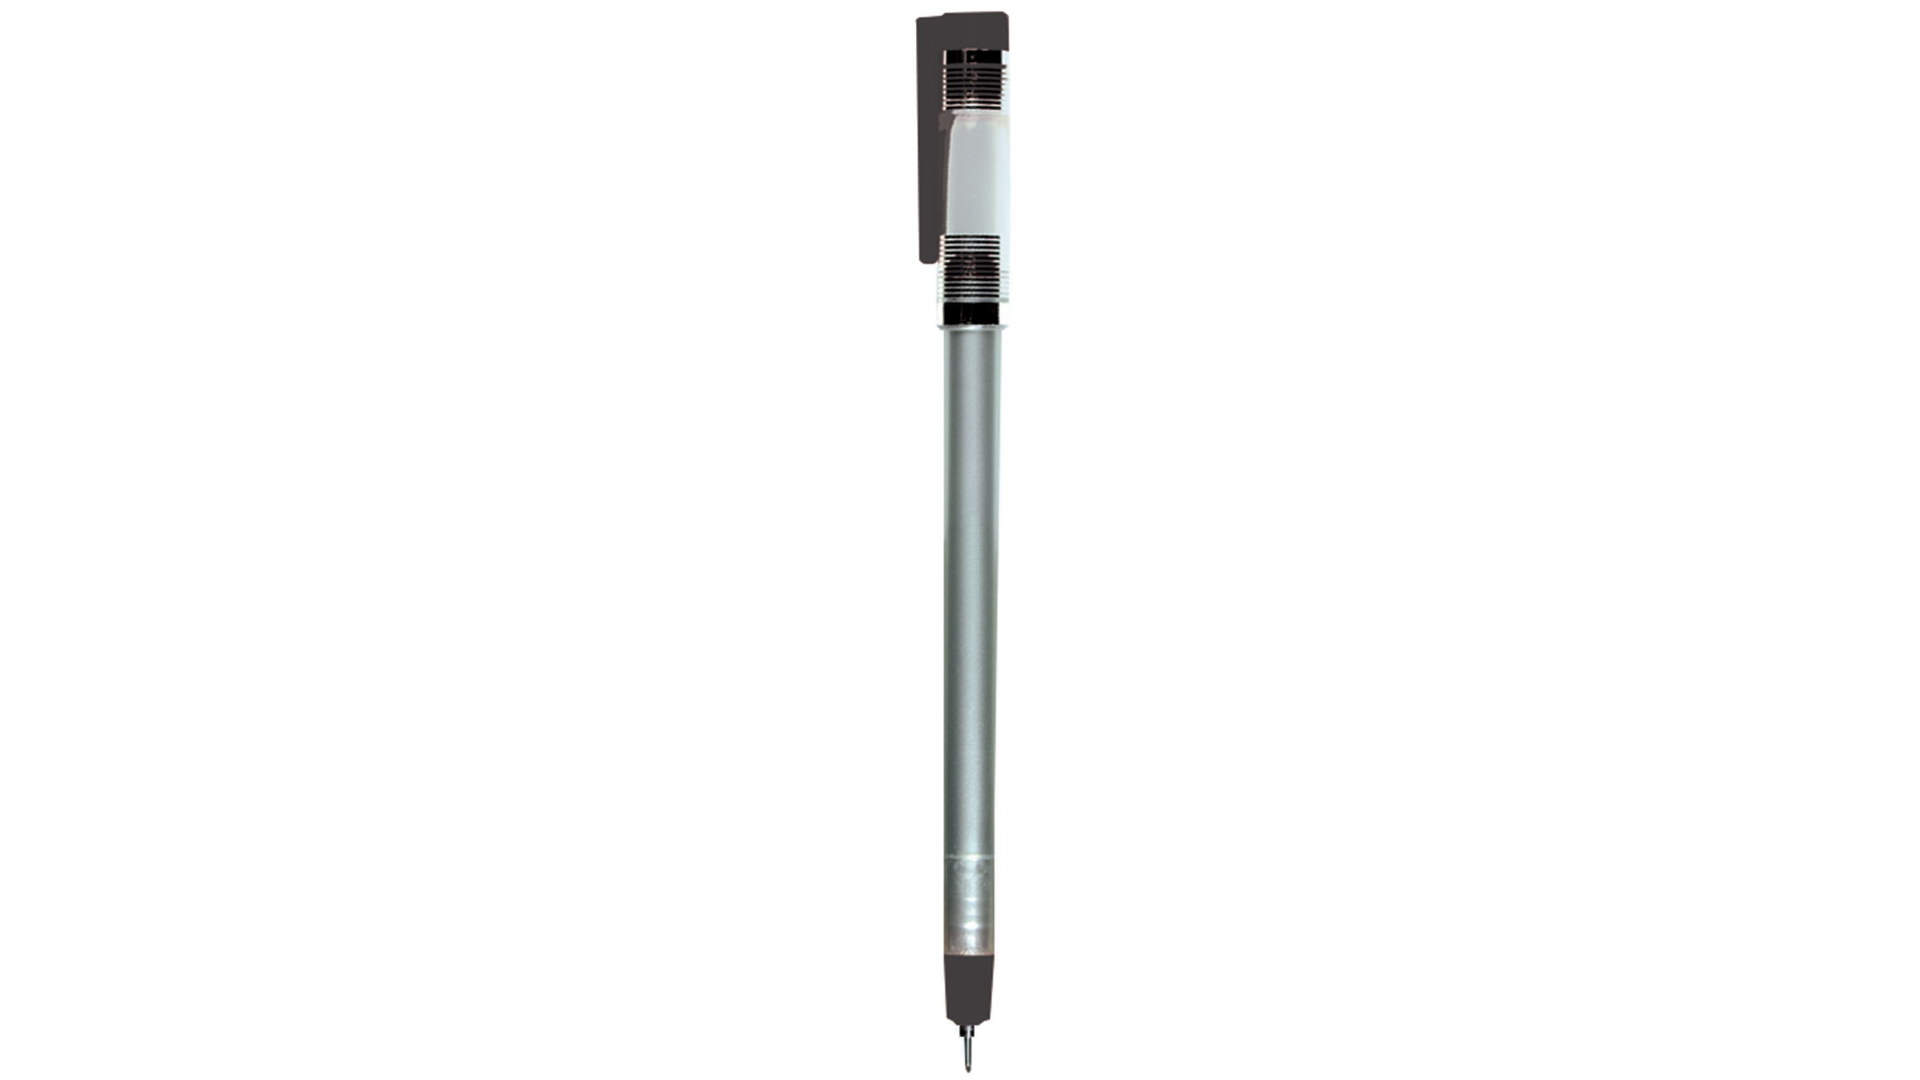 ปากกาบันทึกสำหรับห้องปฏิบัติการ Technical Pens CardinalHealth